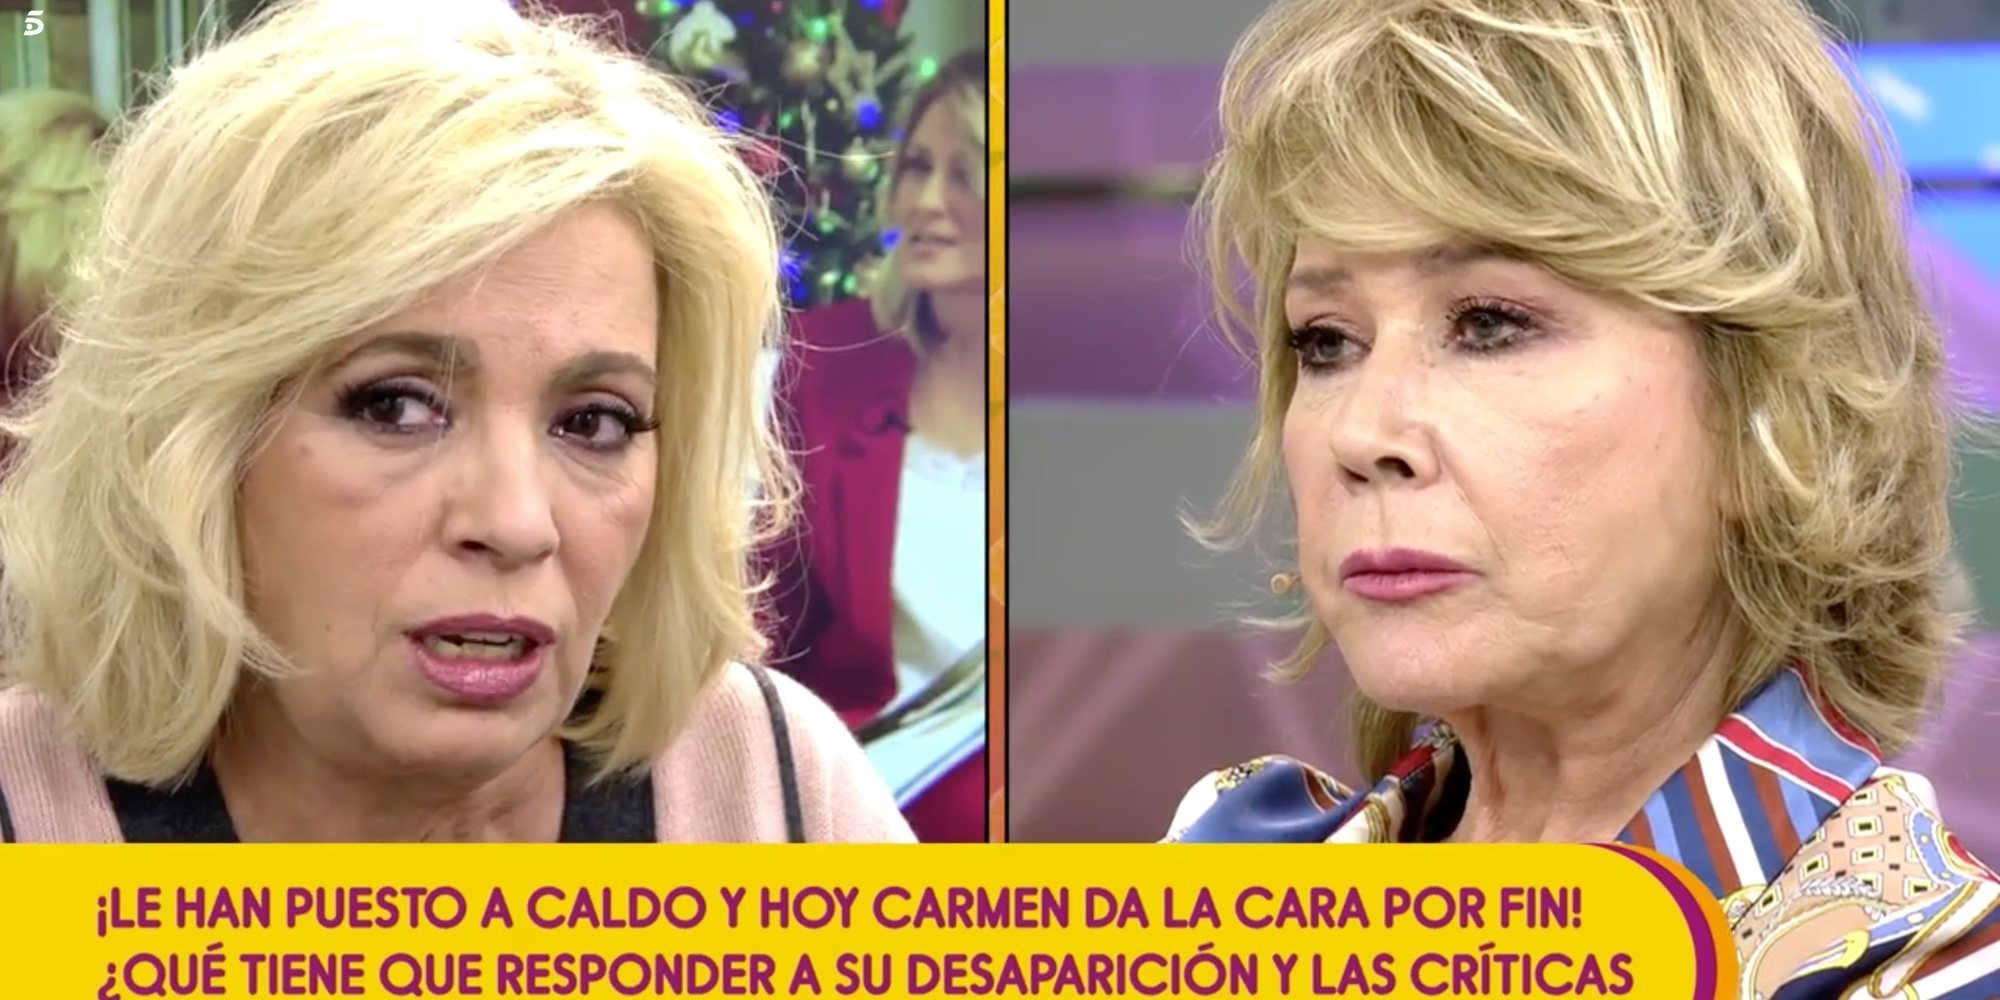 Carmen Borrego se disculpa con Mila Ximénez y asume la culpa de su entrevista: "Tenía que haberme callado"